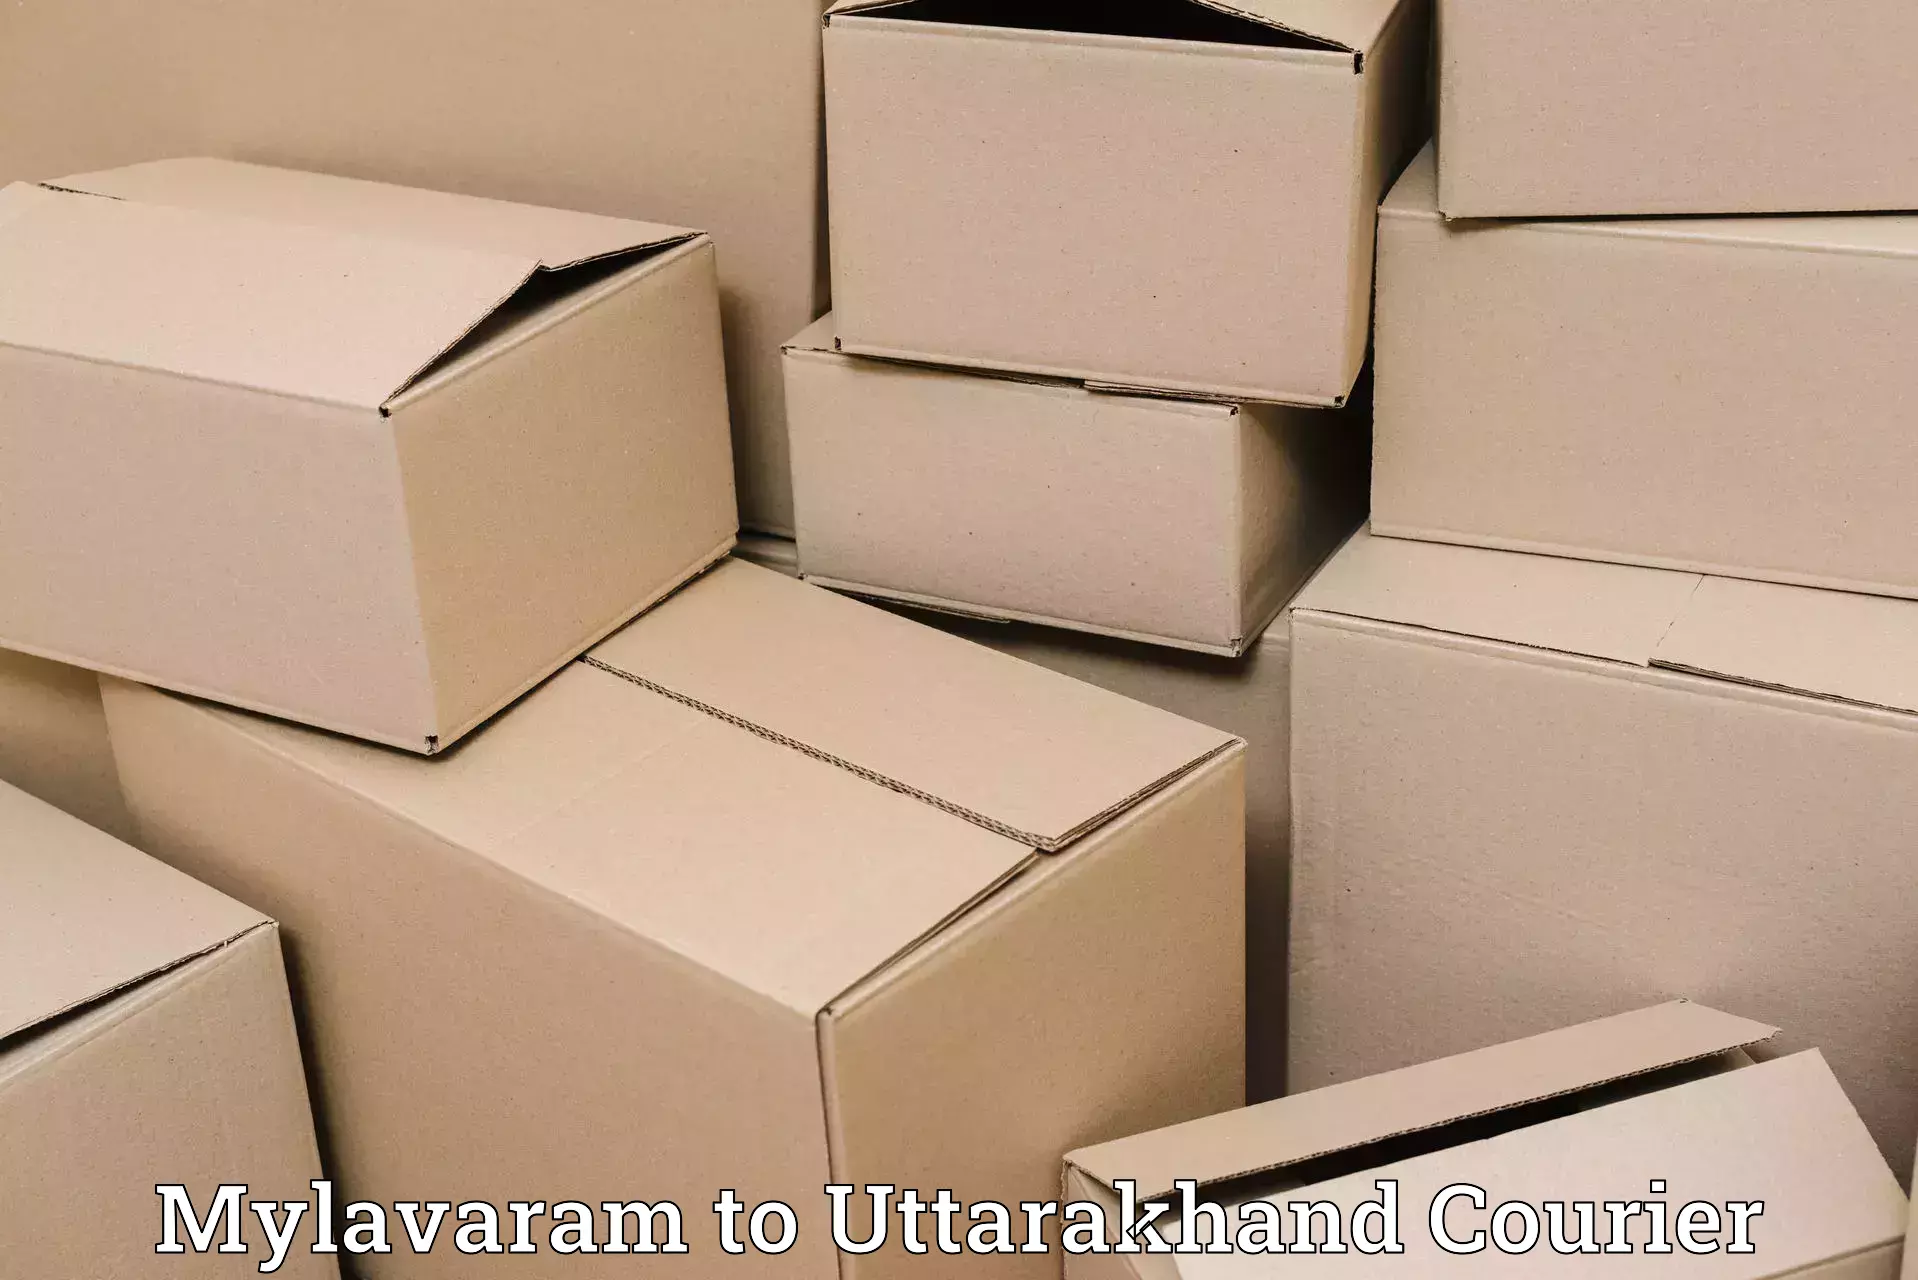 Optimized shipping routes Mylavaram to Ramnagar